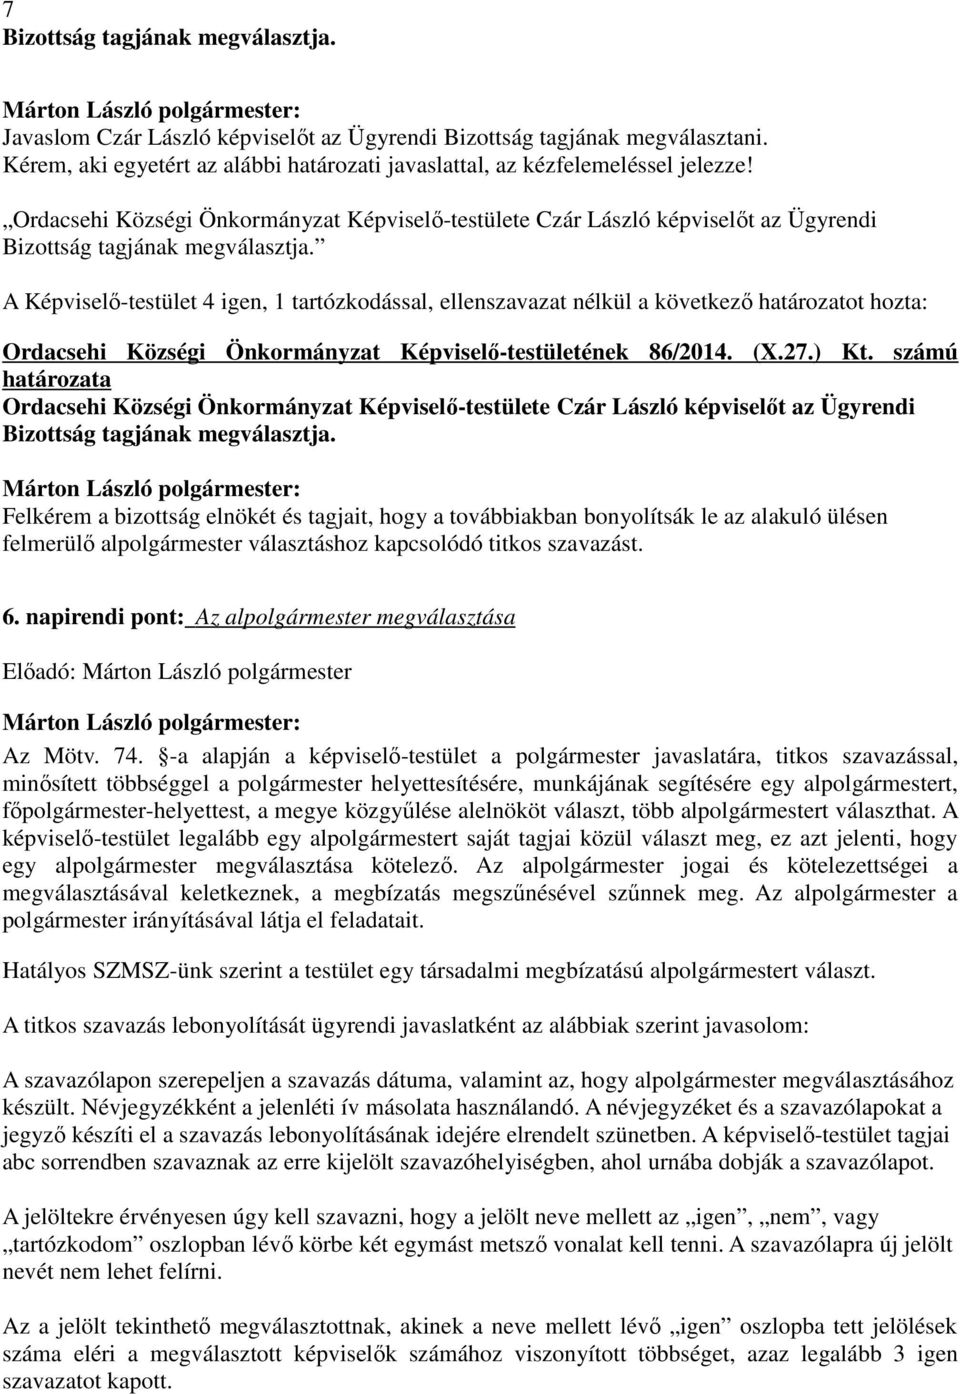 A Képviselı-testület 4 igen, 1 tartózkodással, ellenszavazat nélkül a következı határozatot hozta: Ordacsehi Községi Önkormányzat Képviselı-testületének 86/2014. (X.27.) Kt.